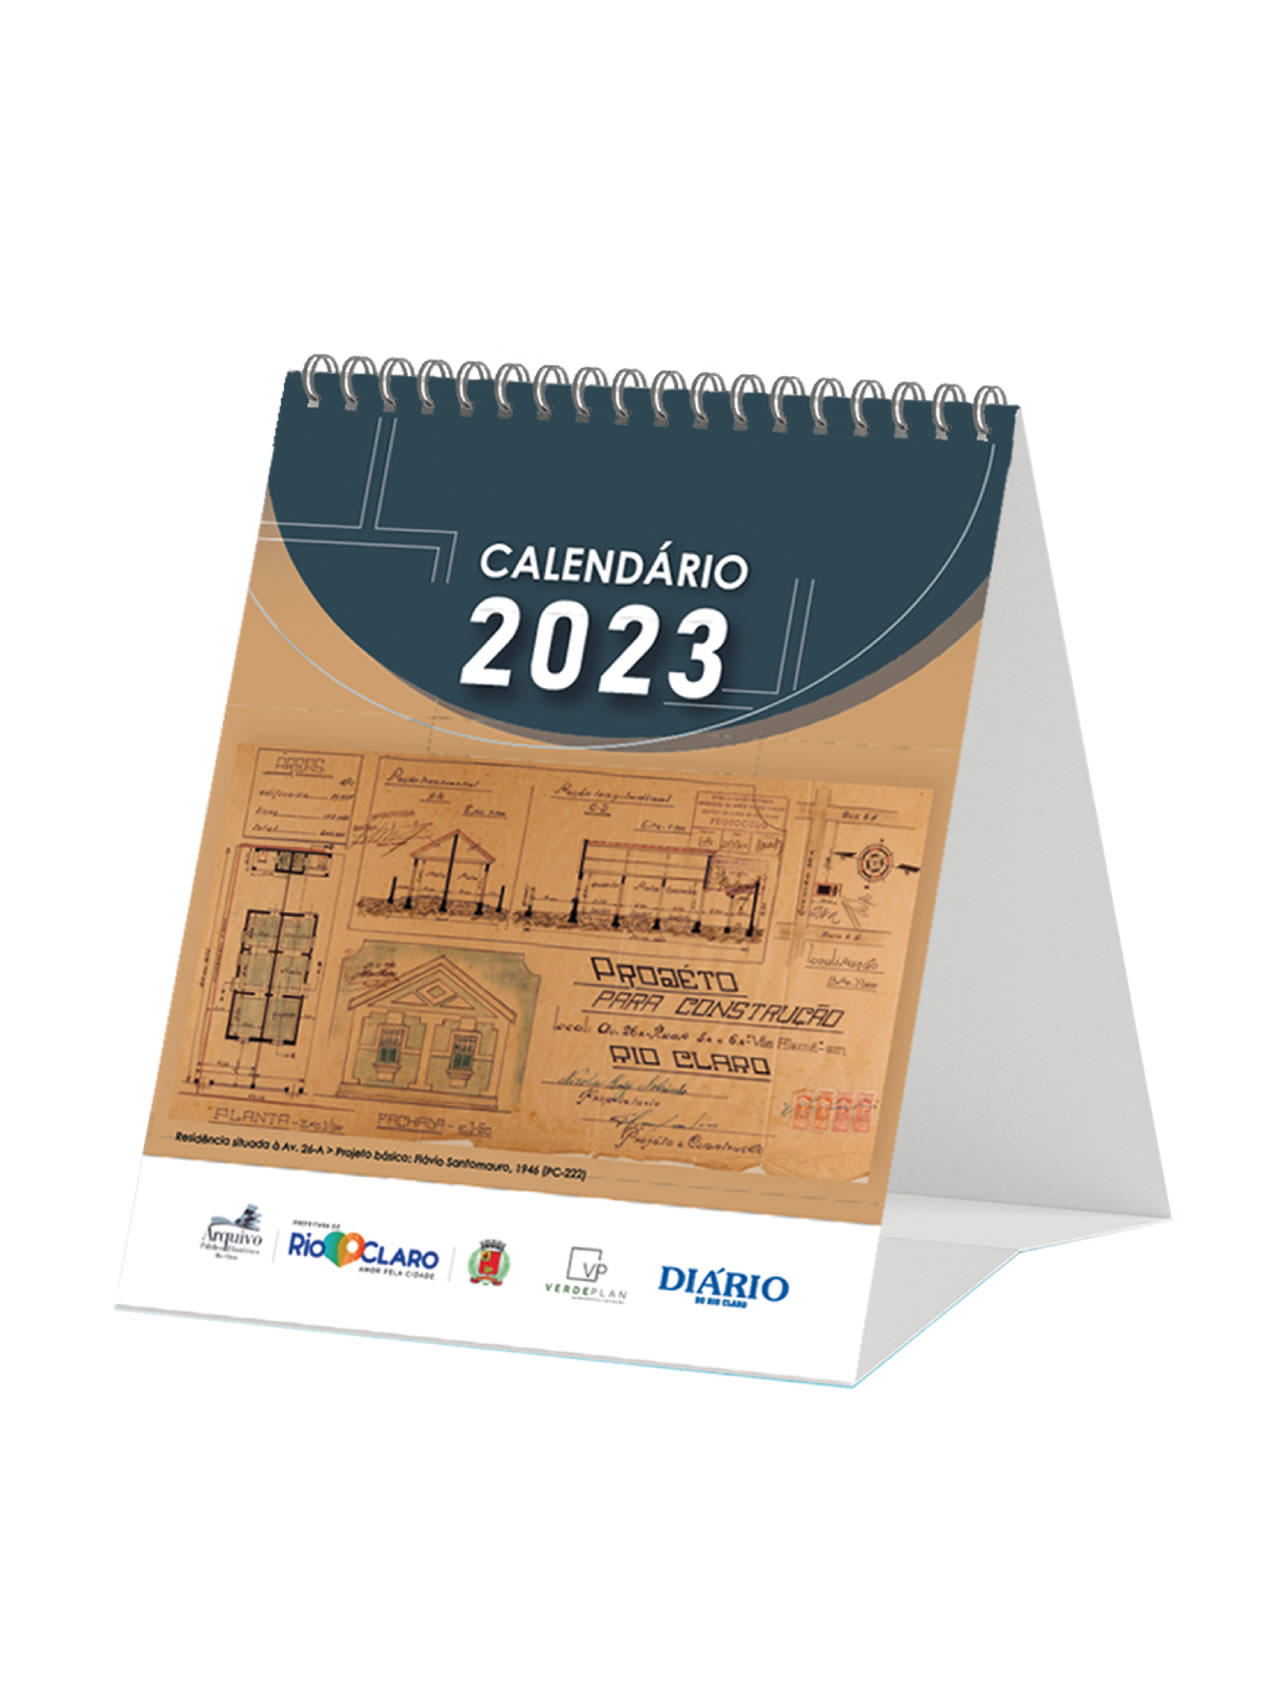 Calendário rio-clarense 2023